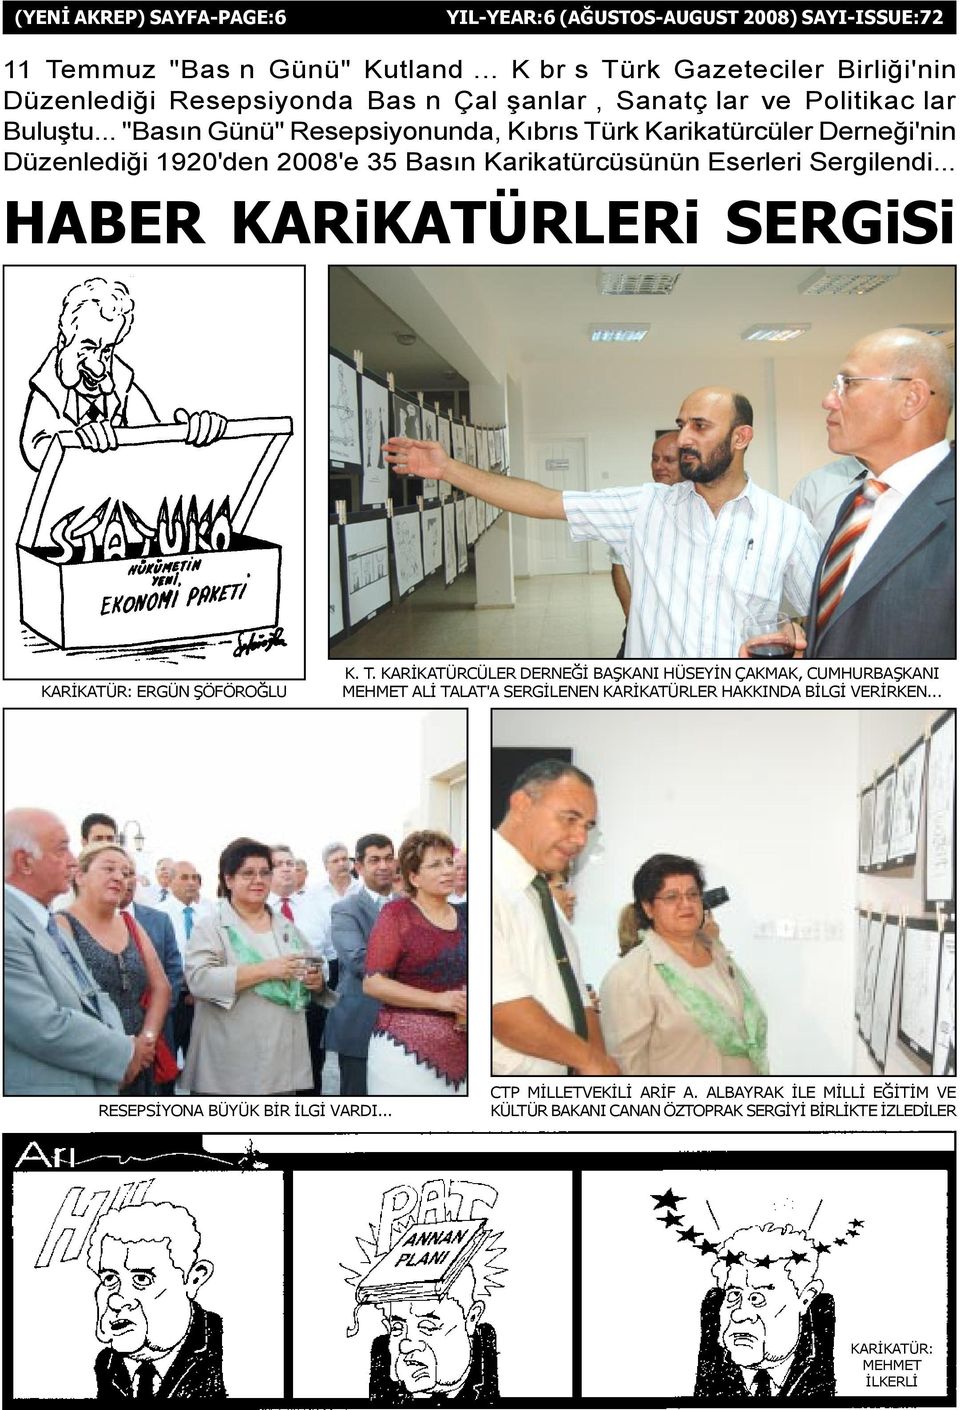 .. "Basýn Günü" Resepsiyonunda, Kýbrýs Türk Karikatürcüler Derneði'nin Düzenlediði 1920'den 2008'e 35 Basýn Karikatürcüsünün Eserleri Sergilendi.